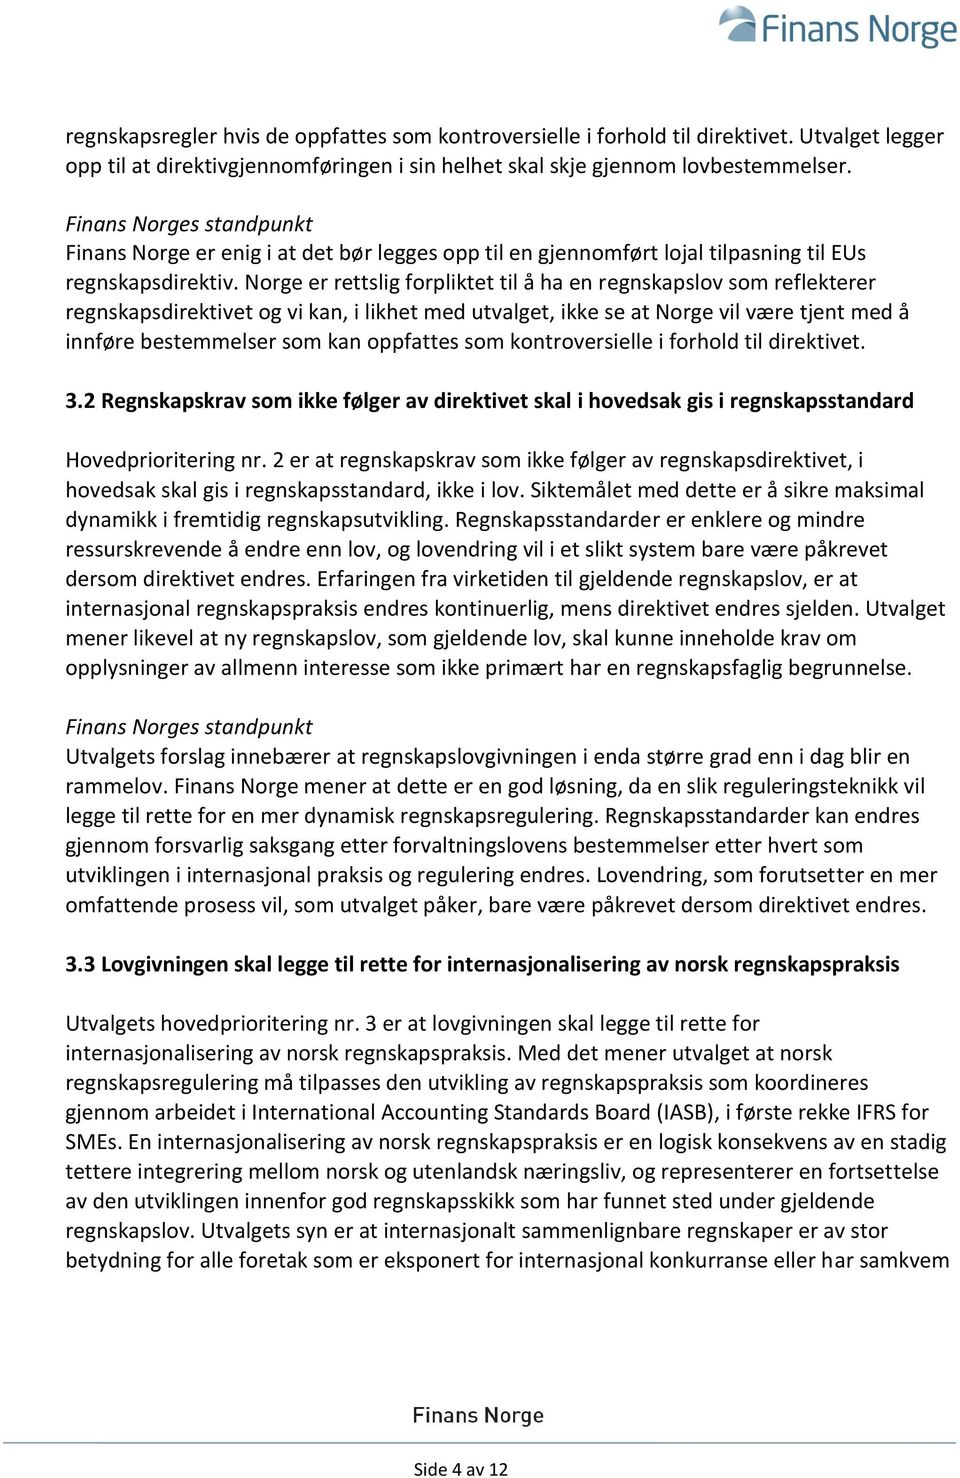 Norge er rettslig forpliktet til å ha en regnskapslov som reflekterer regnskapsdirektivet og vi kan, i likhet med utvalget, ikke se at Norge vil være tjent med å innføre bestemmelser som kan